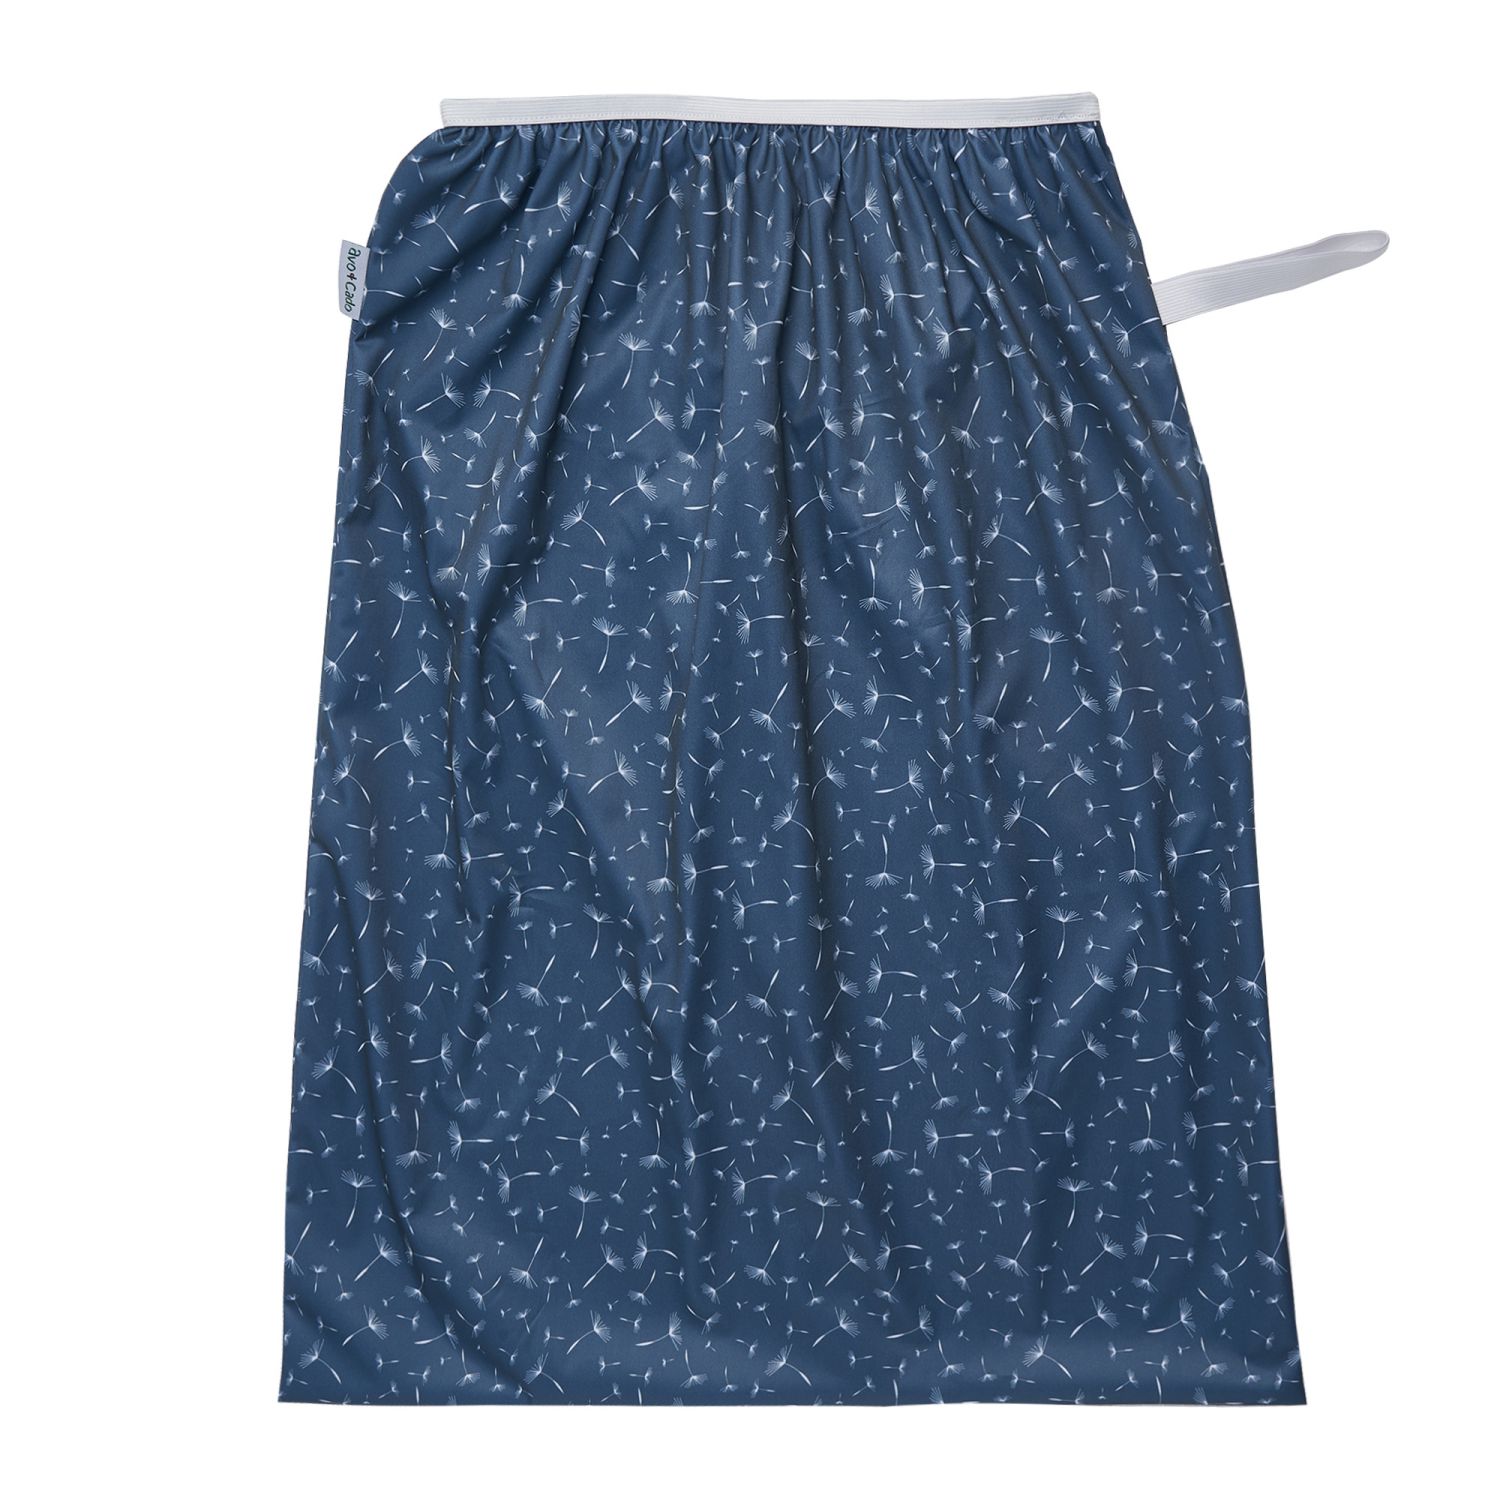 en Pail liner, dvs en stor pul-påse att sätta i en tvättkorg för förvaring av tygblöjor, i blått med mönster utav vita maskrosor på. Från Avo&Cado. A pail liner for storing dirty cloth diapers in blue